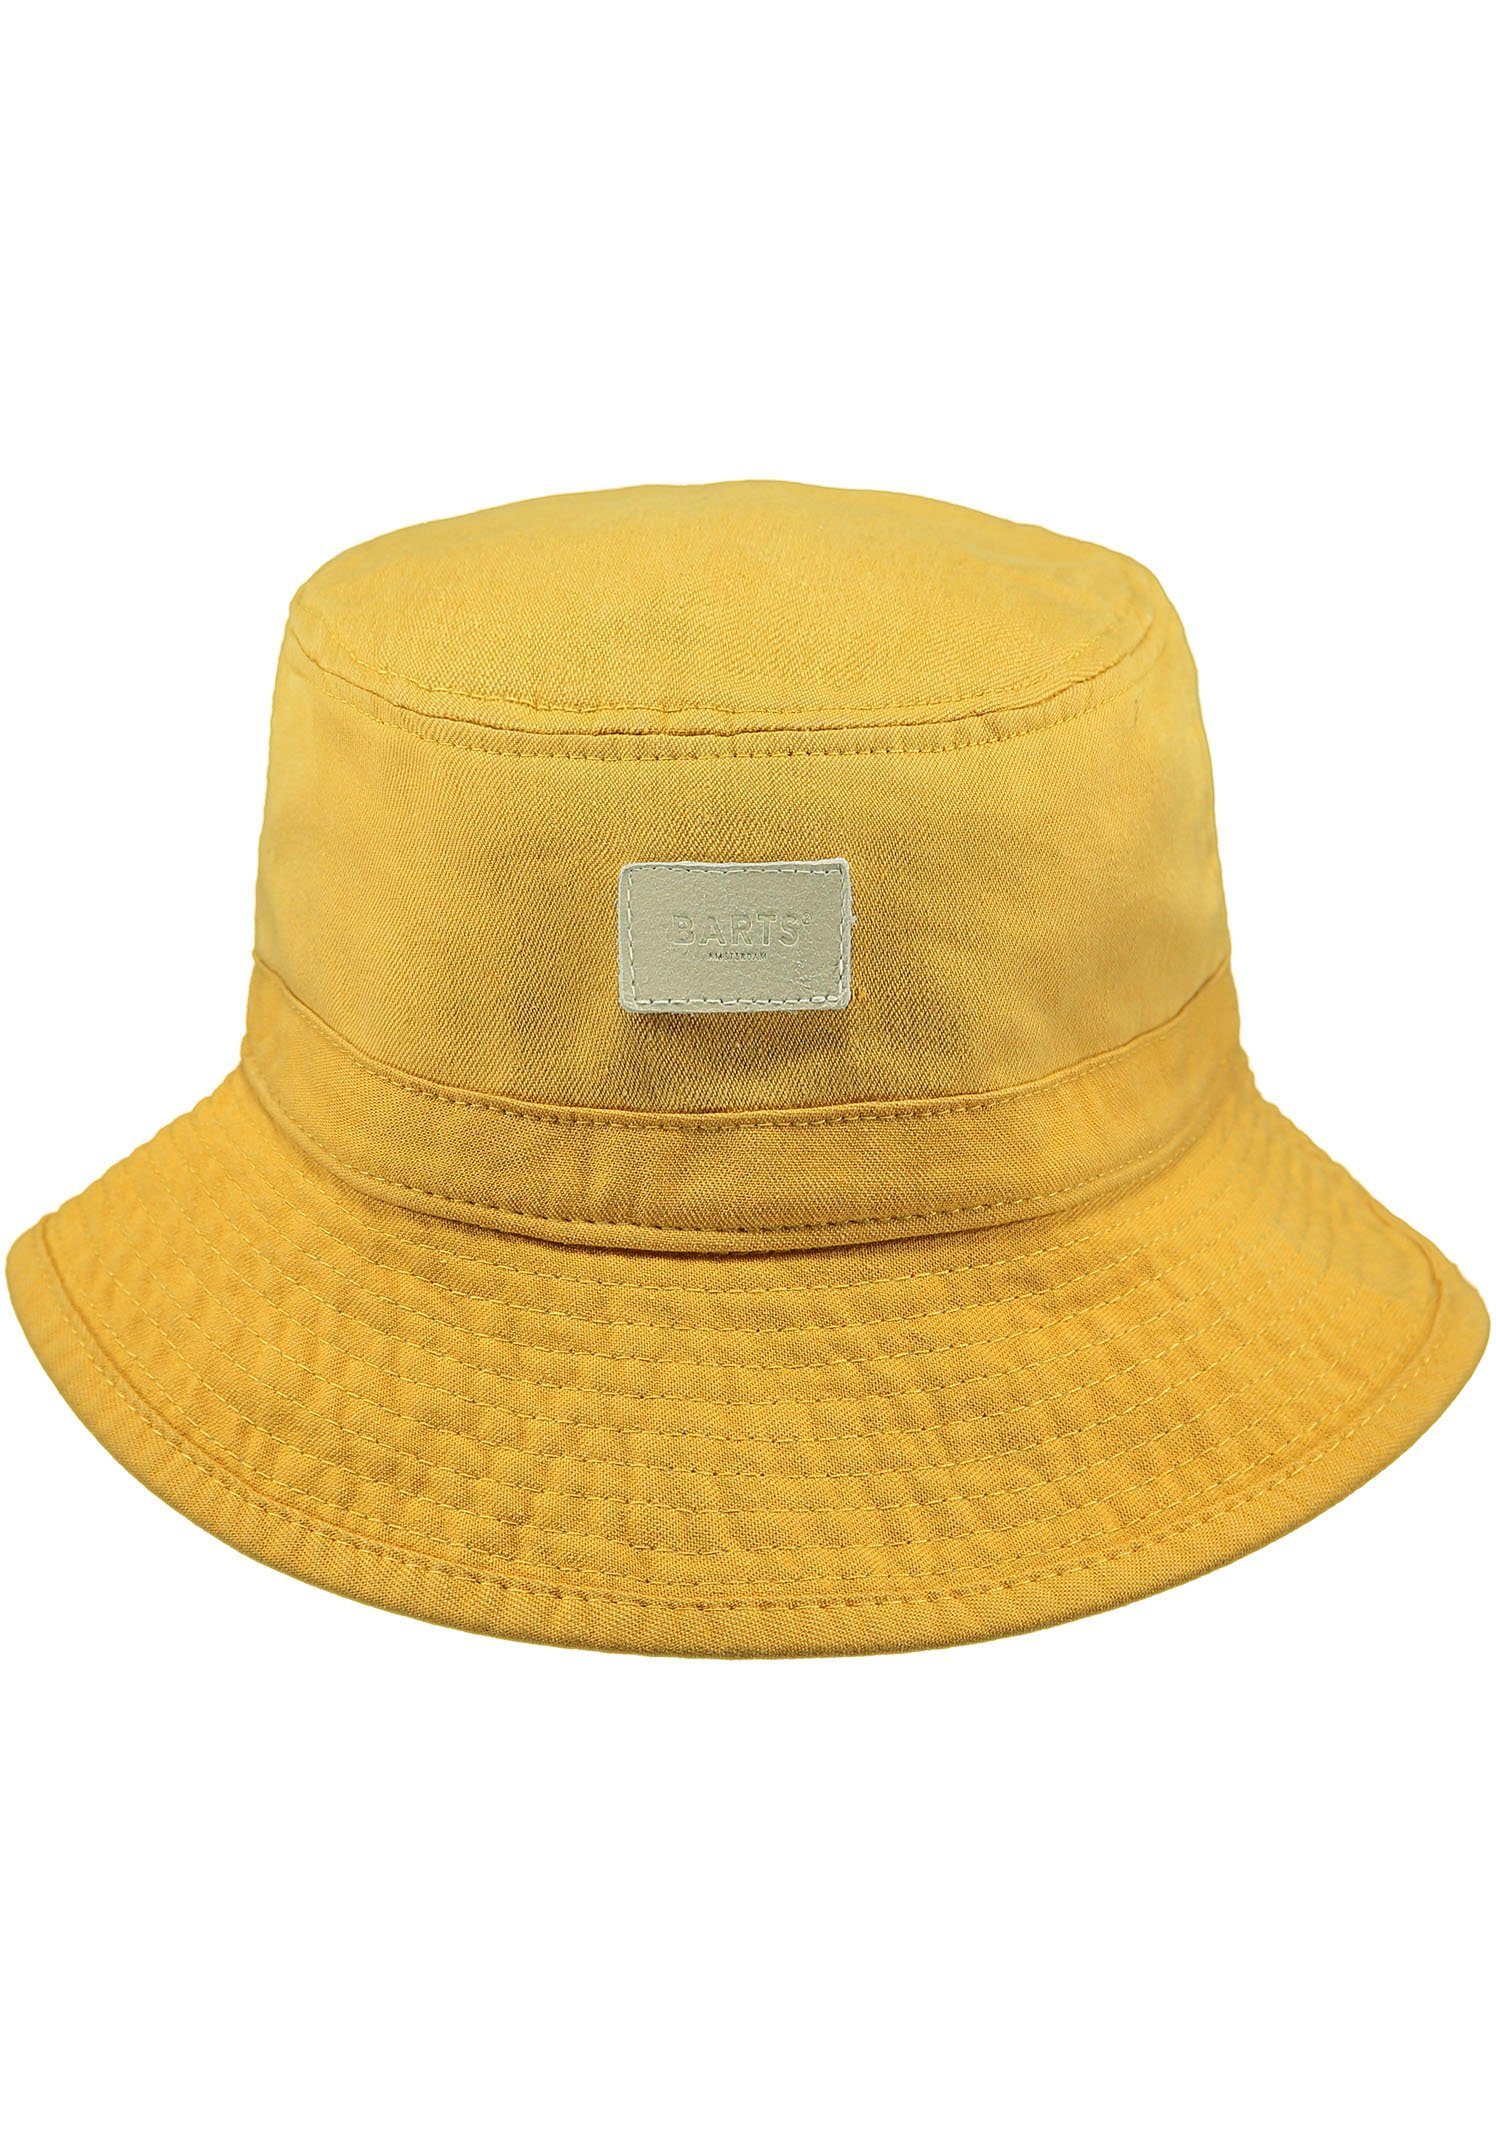 Barts Fischerhut Orohena Hat yellow | Sonnenhüte